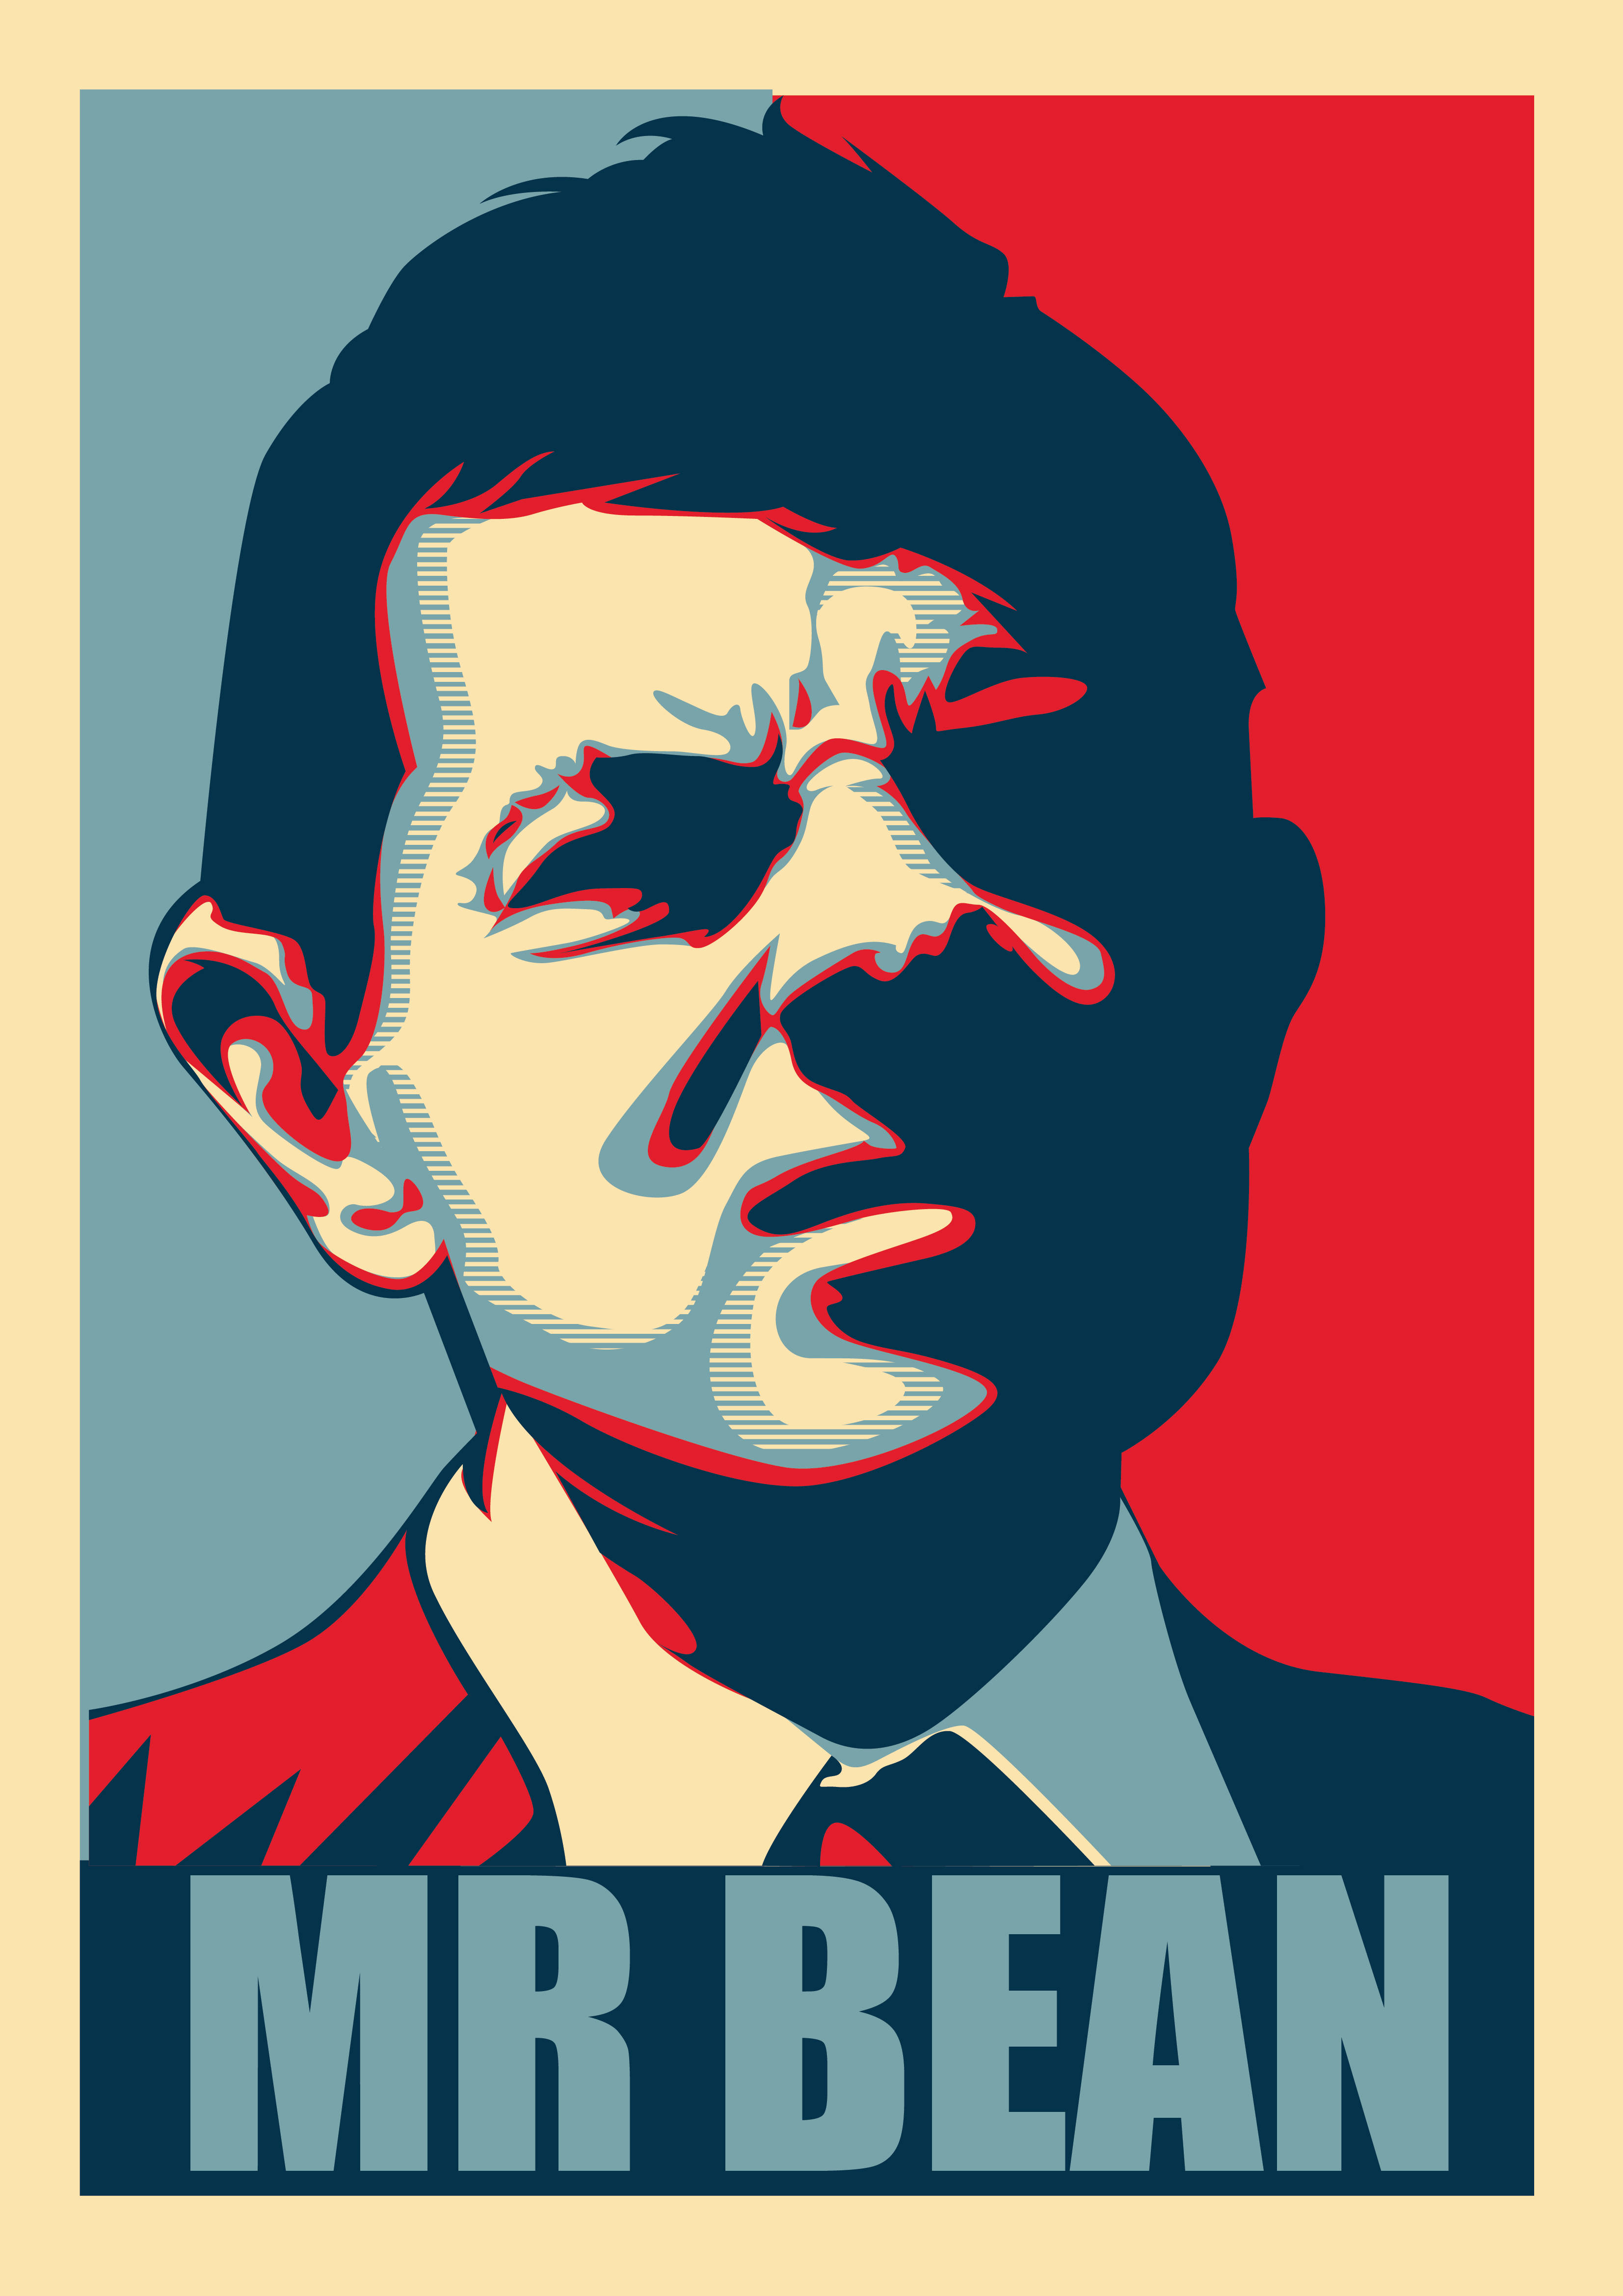 Mr Bean 4k Poster Wallpaper